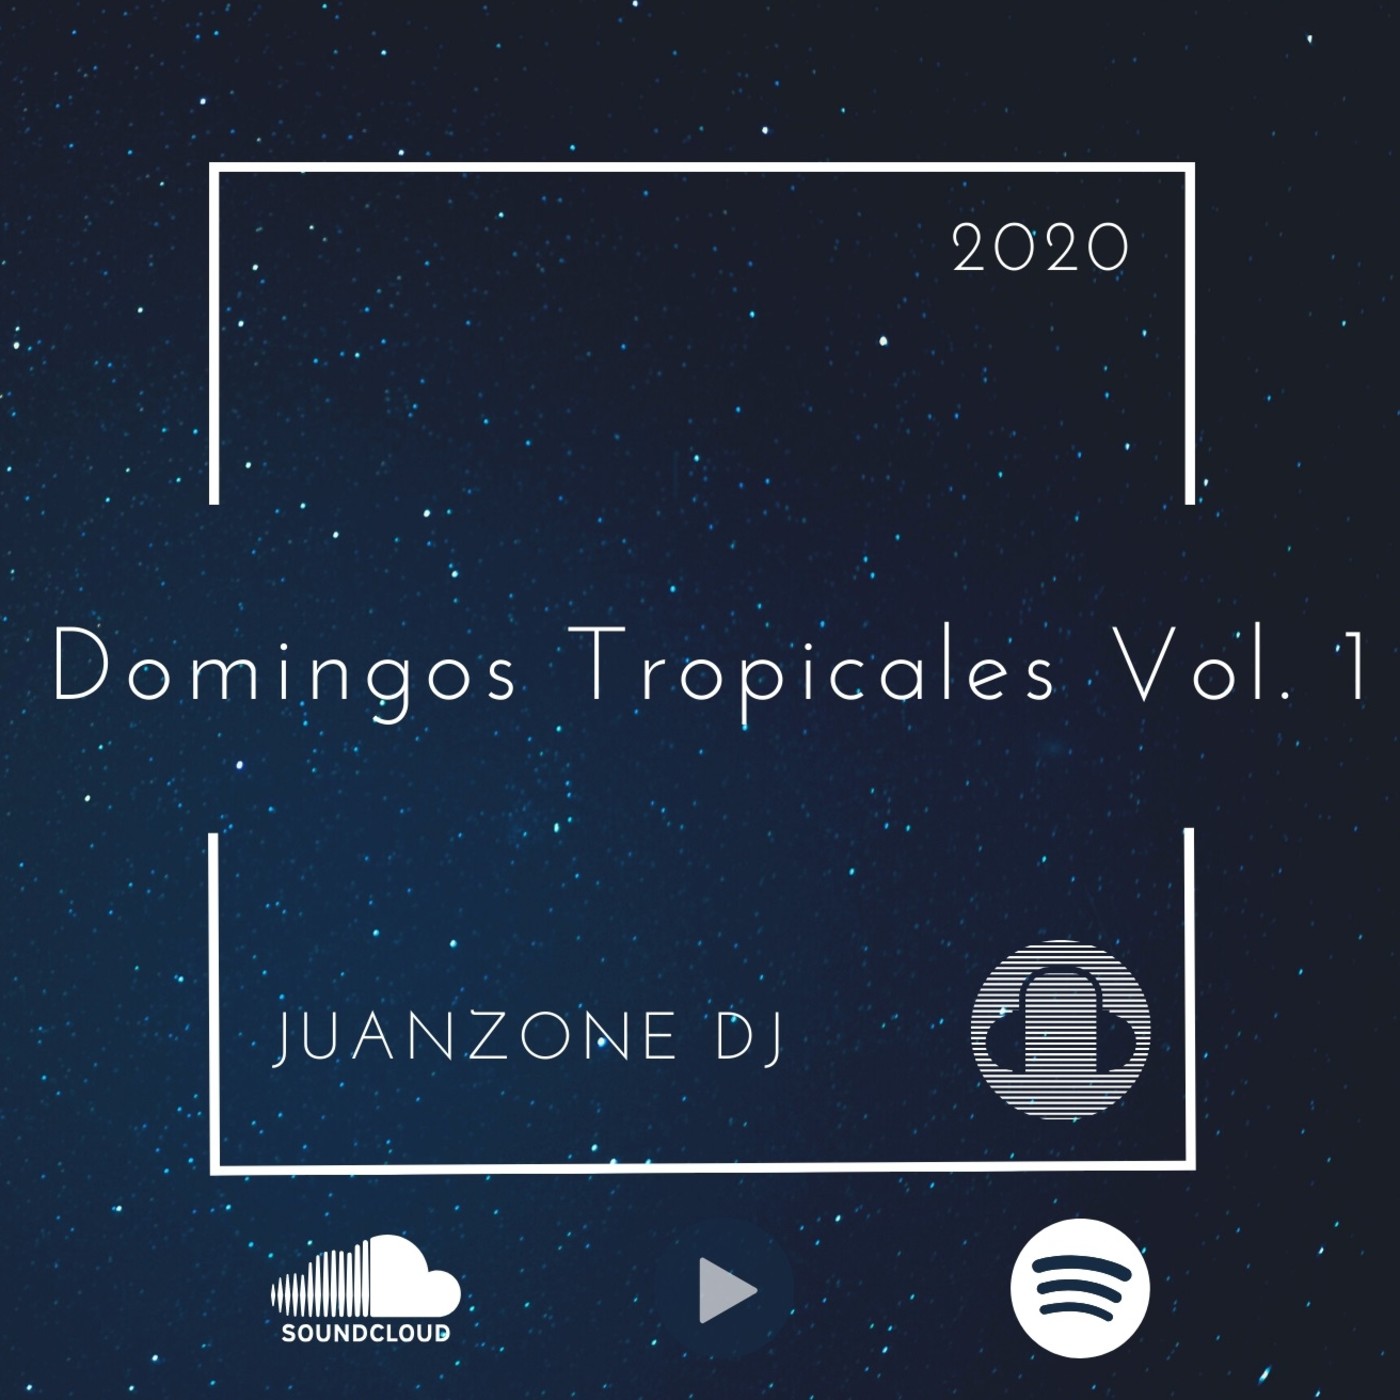 Juanzone Dj - Domingos Tropicales Vol. 1 Mix 2020 (Nada Es Suficiente)